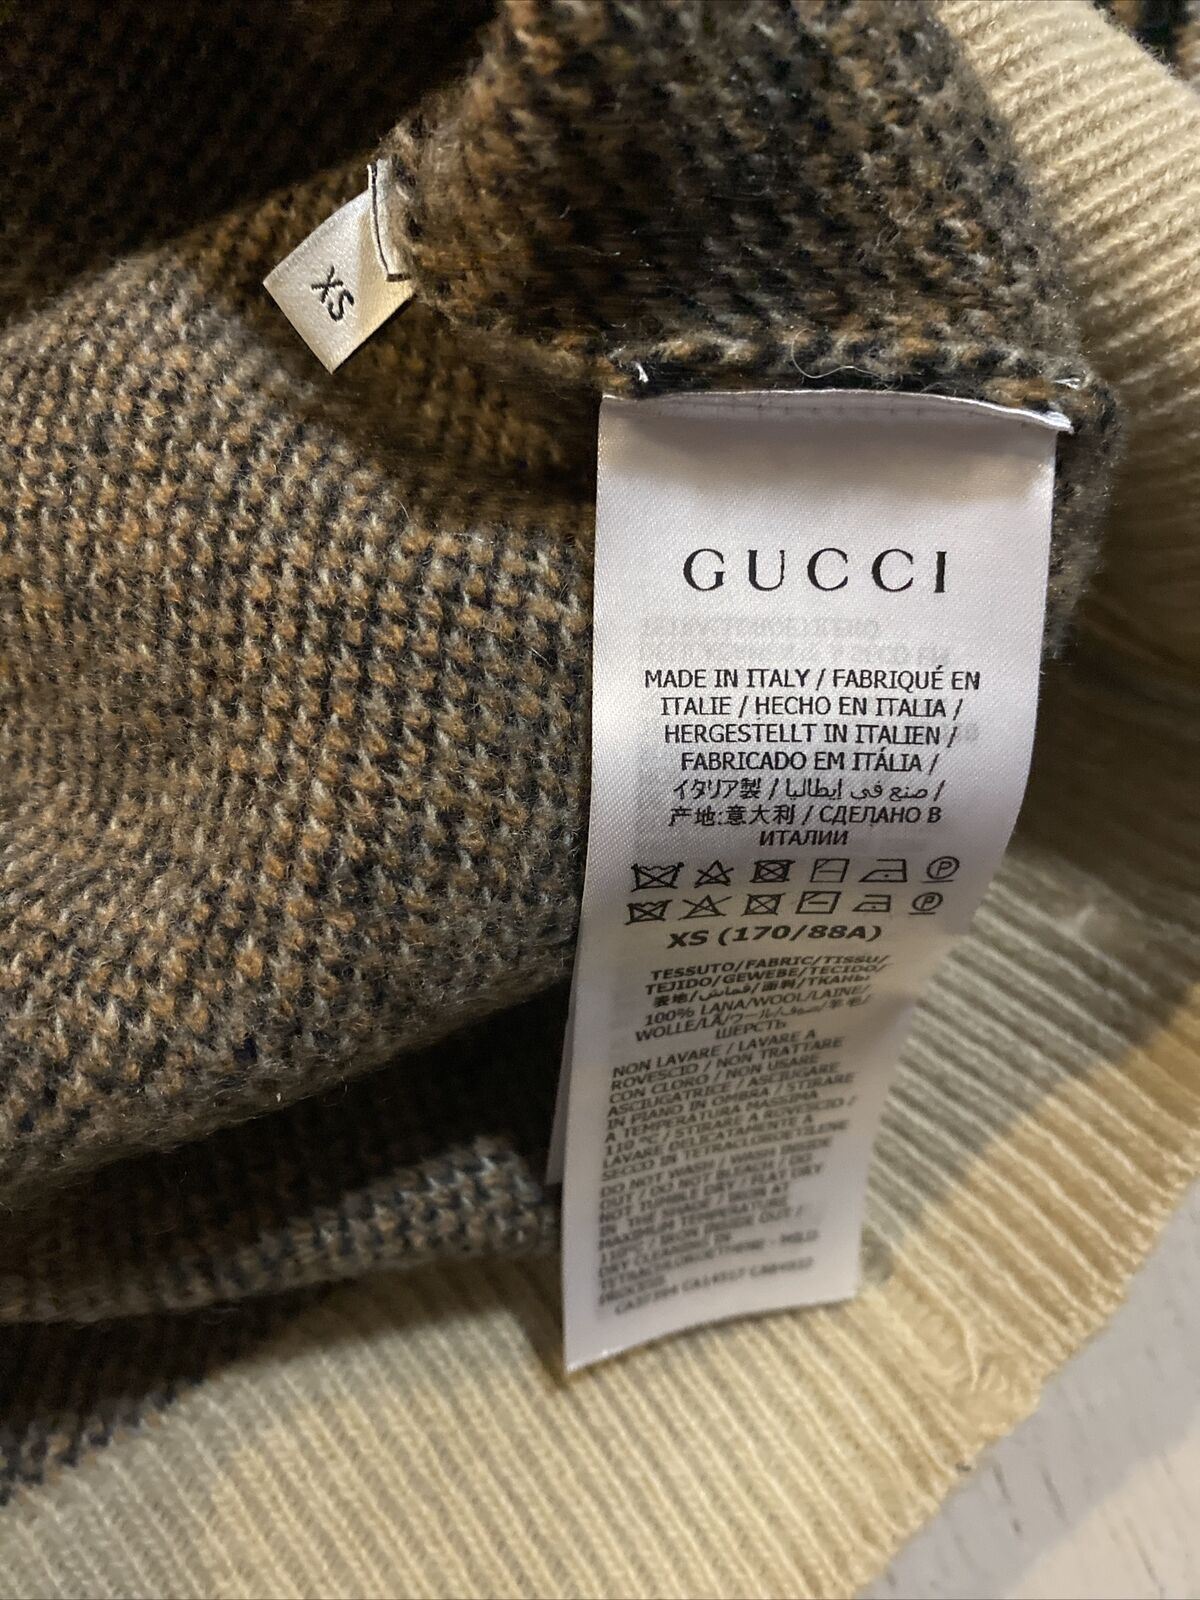 Neu mit Etikett: 1960 $ Gucci Herren Woll-Jacquard-Strickpullover mit Rundhalsausschnitt Kamel/Schwarz XS Italien